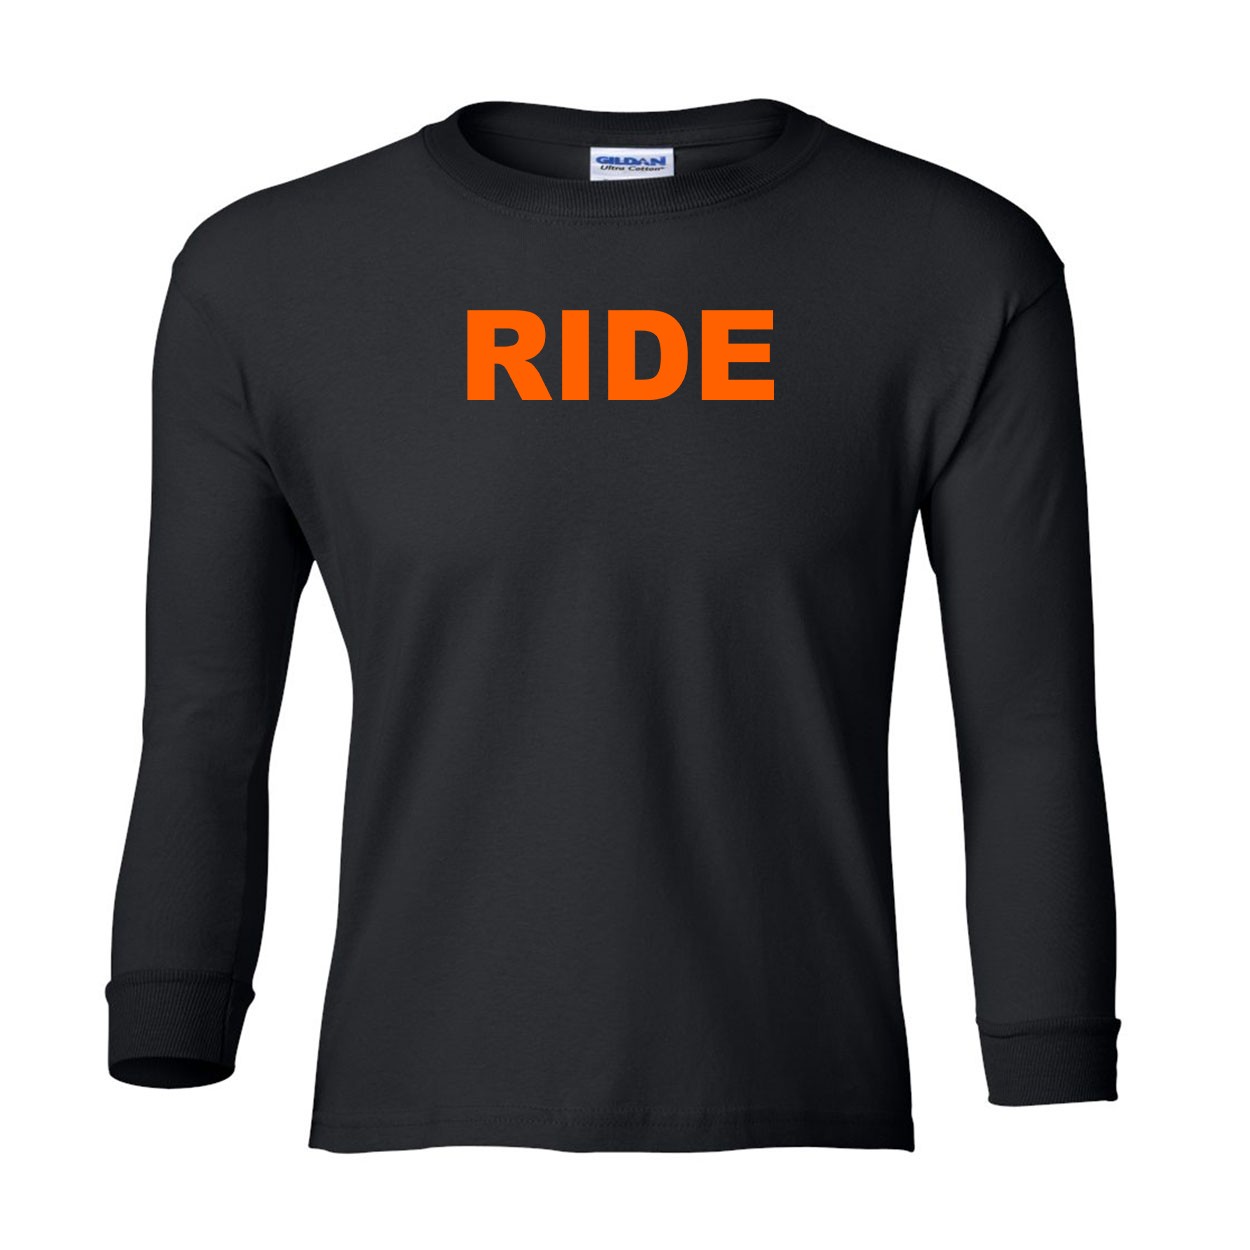 Ride Brand Logo Classic Youth Unisex Long Sleeve T-Shirt Black (Orange Logo)